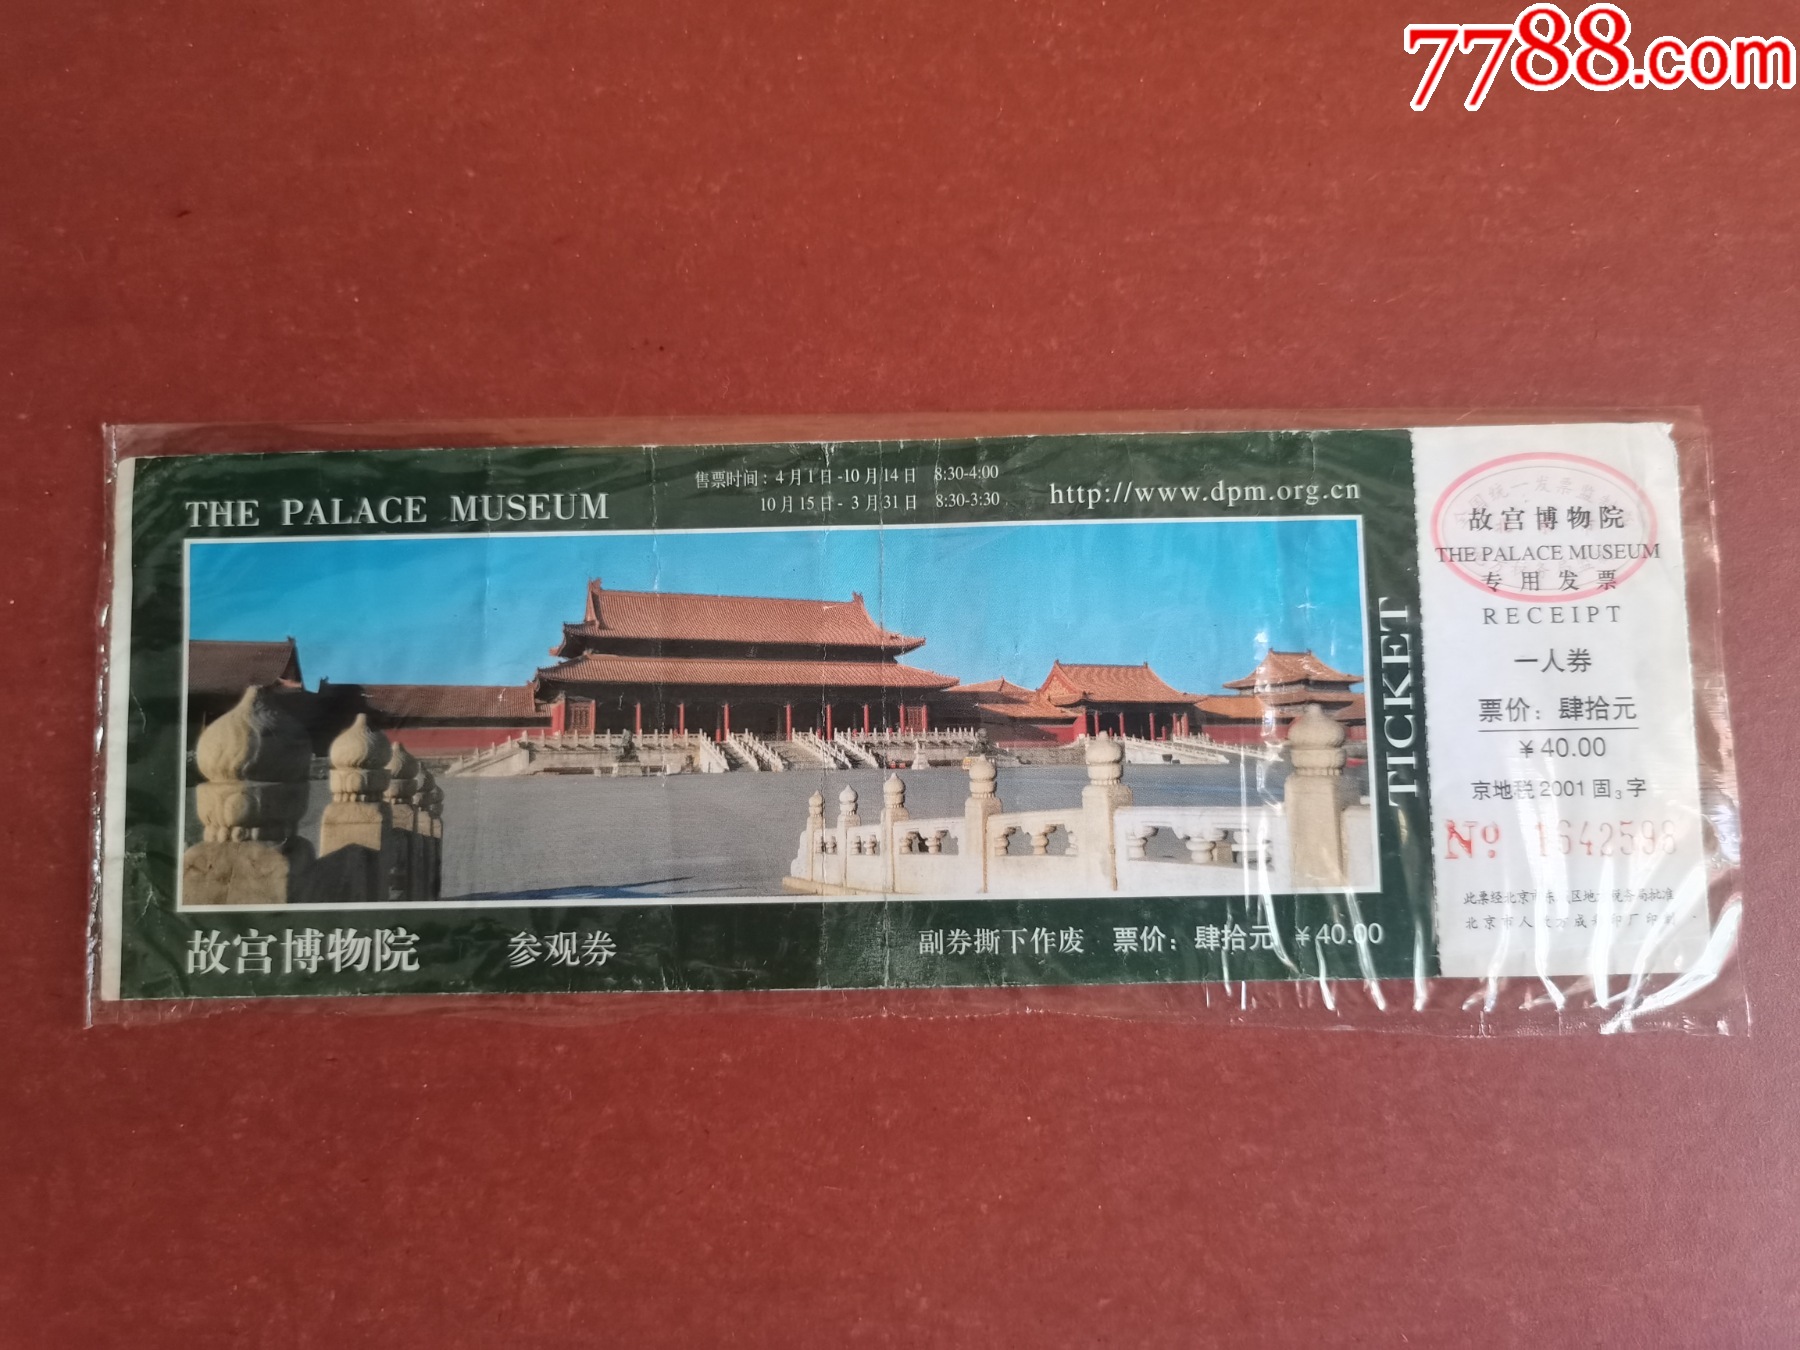 故宫博物馆门票-价格:1元-au15274924-旅游景点门票 -加价-7788收藏__收藏热线